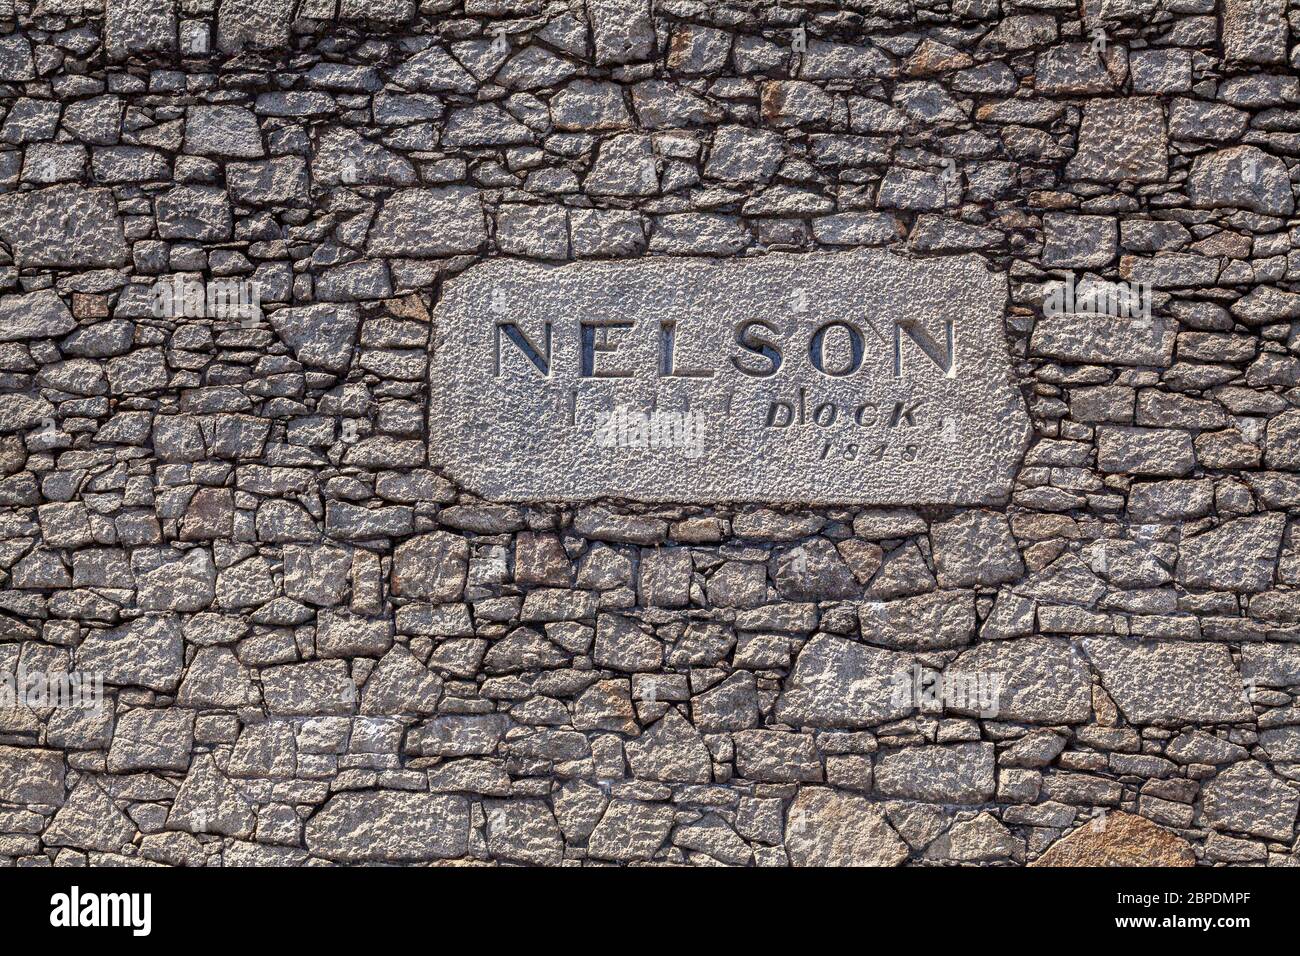 Schild an der alten Steinmauer des Nelson Dock, Teil des Hafens von Liverpool, England Stockfoto